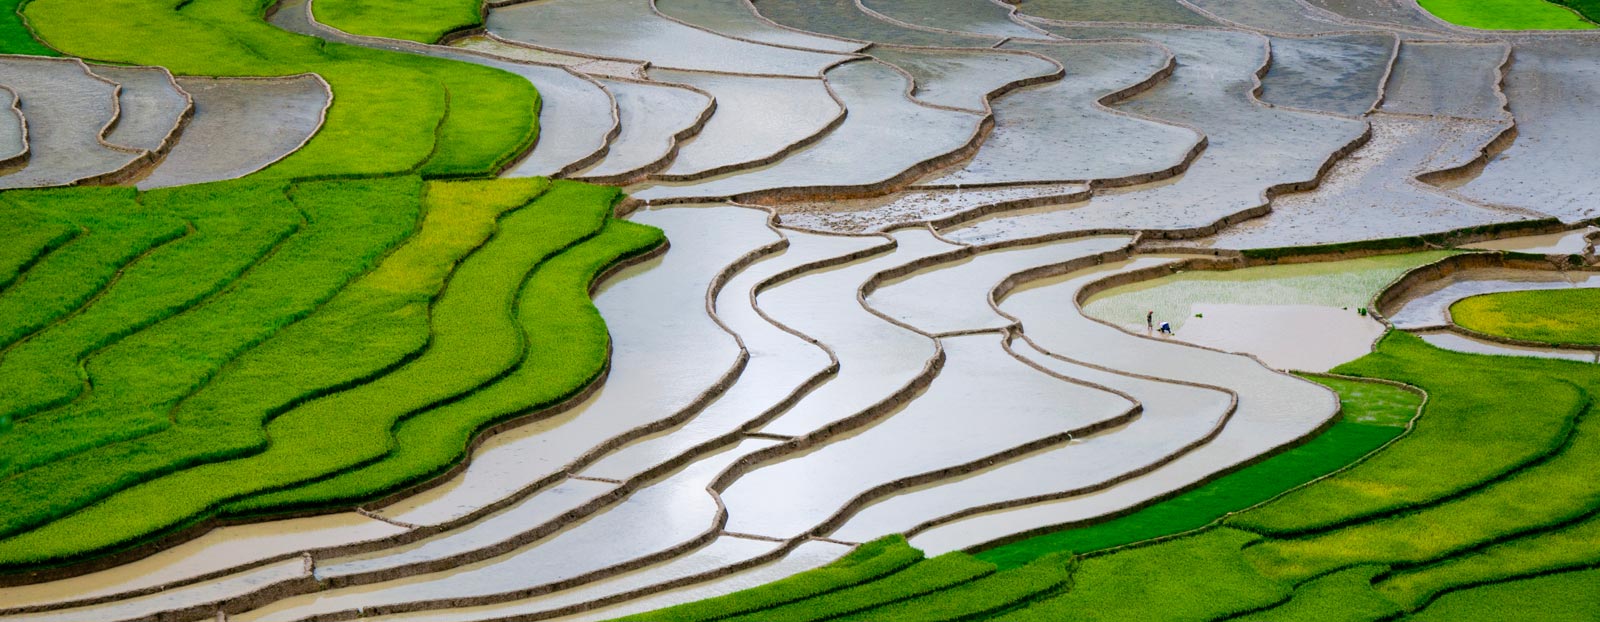 Natural habitat of rice